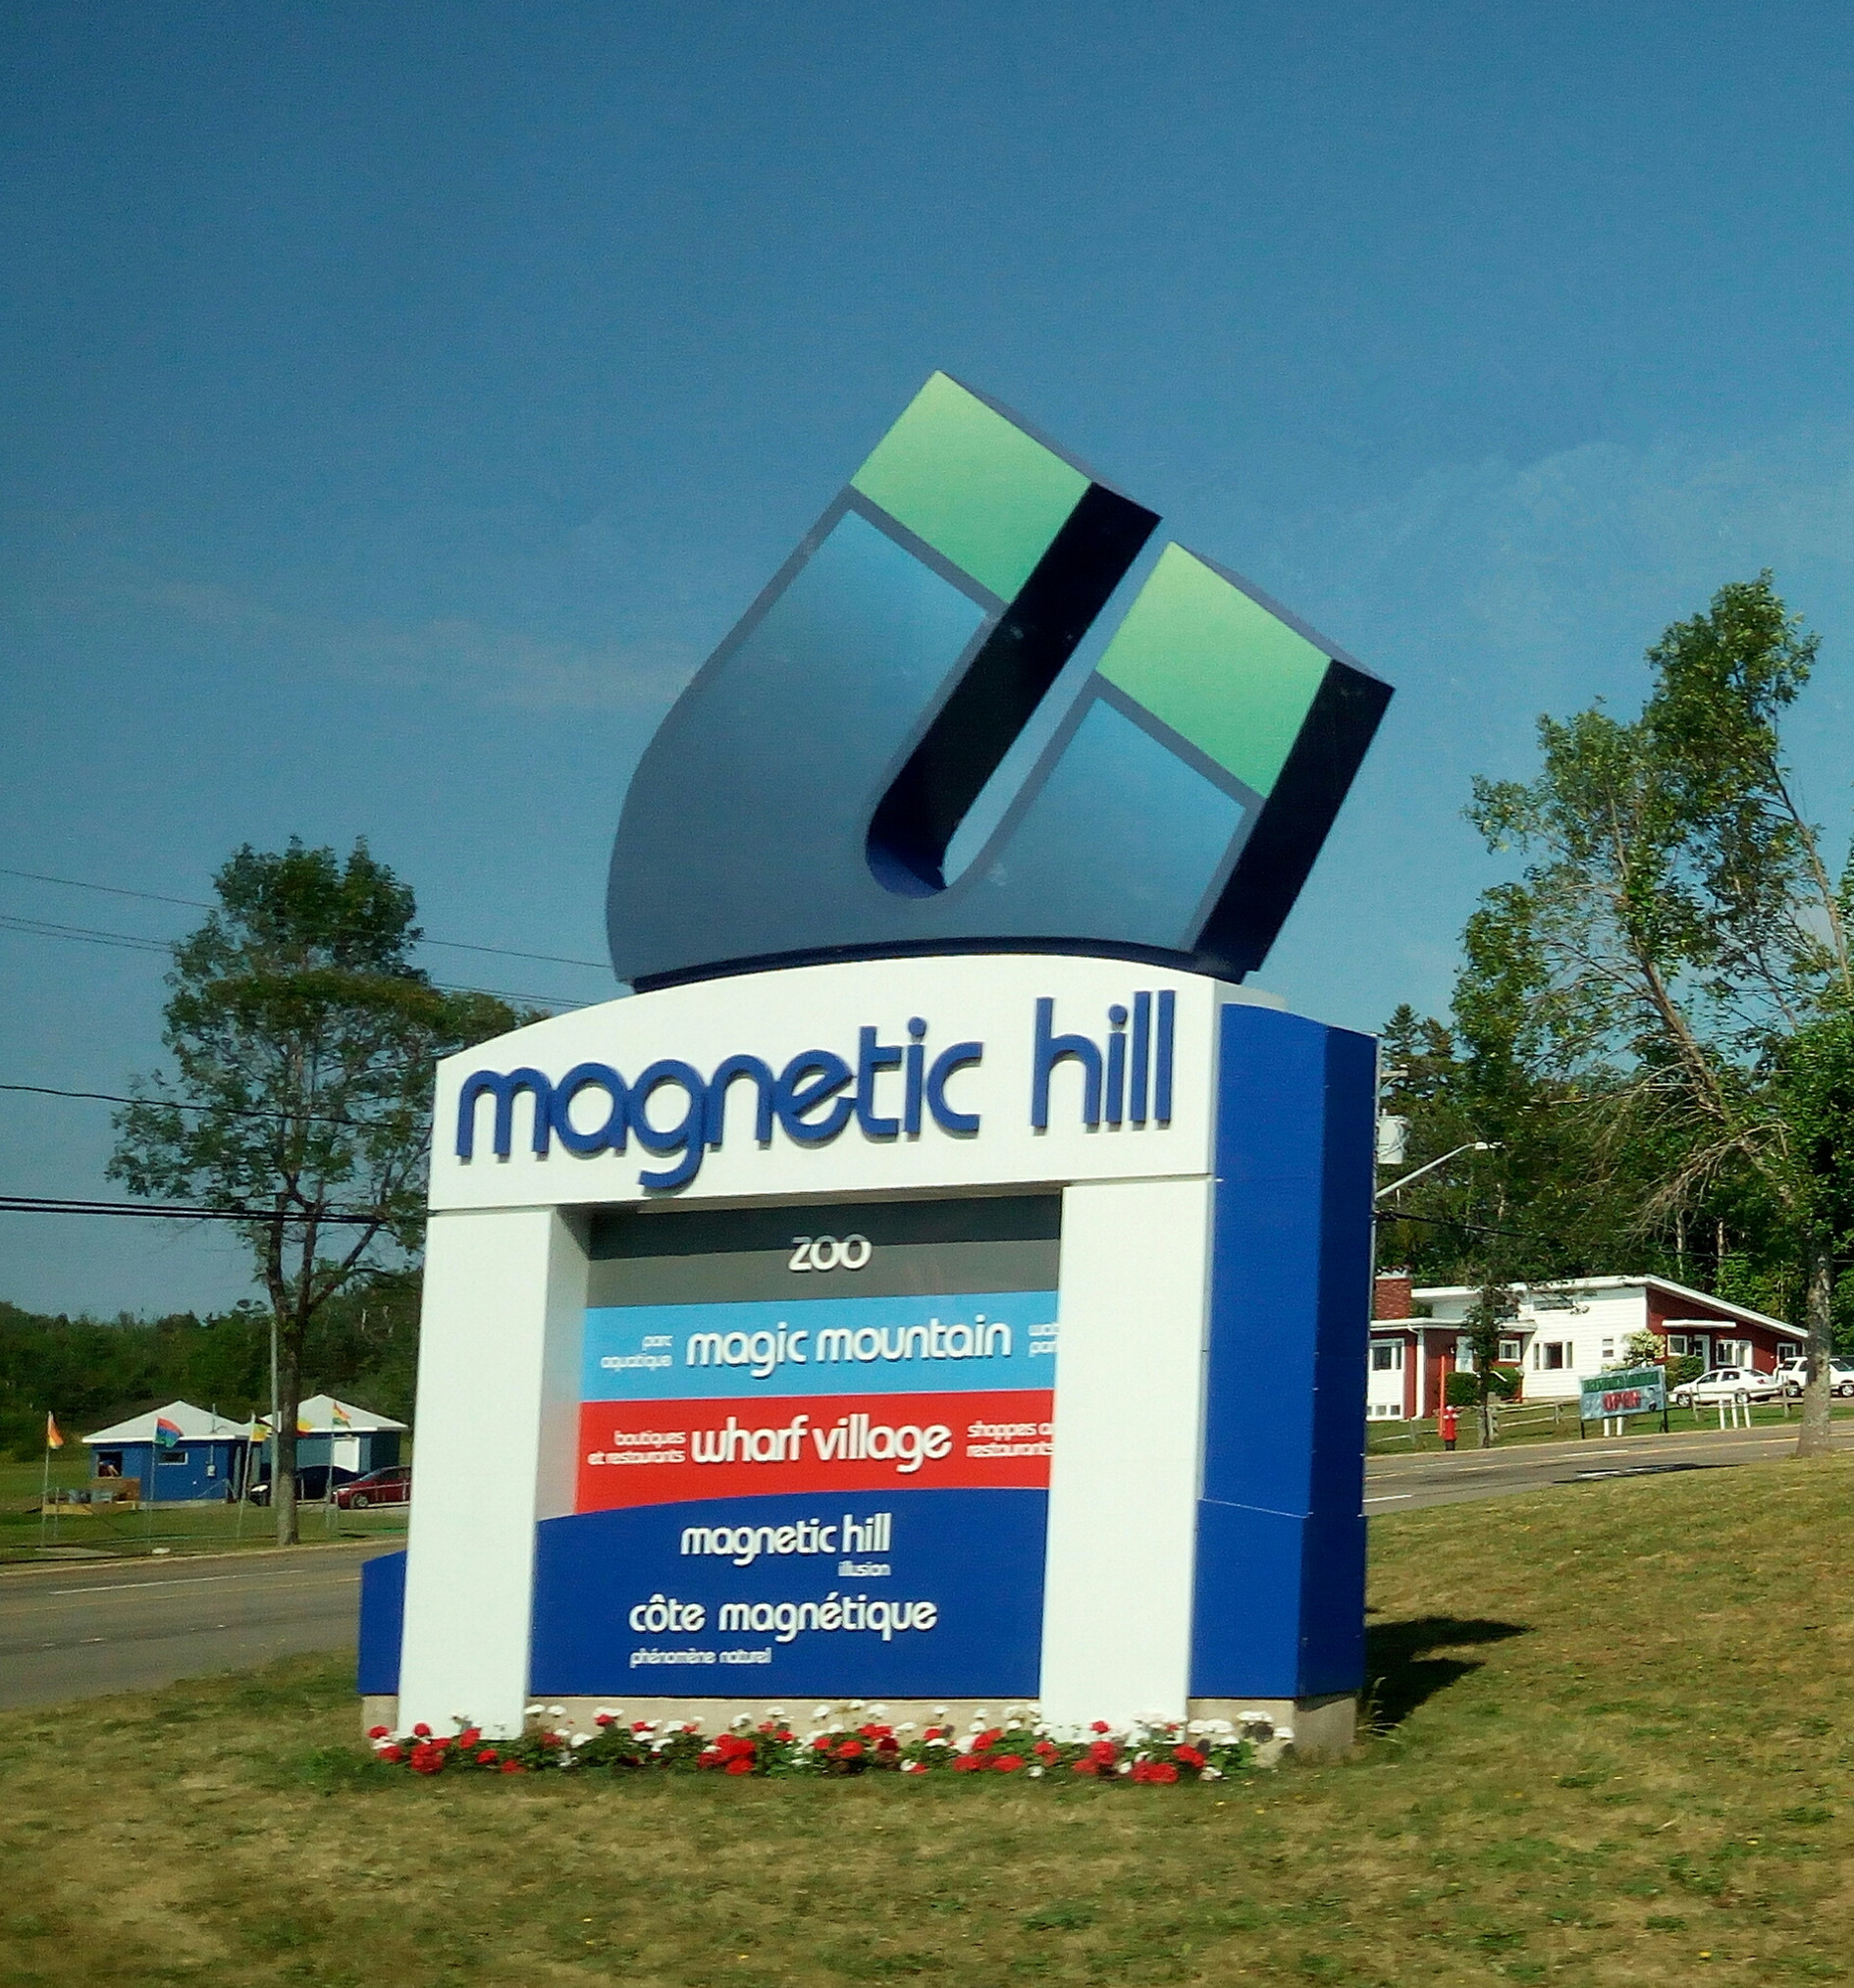 磁力山（The Magnetic Hill）是蒙克顿的一个旅游景点，在20世纪30年代被人们发现，门